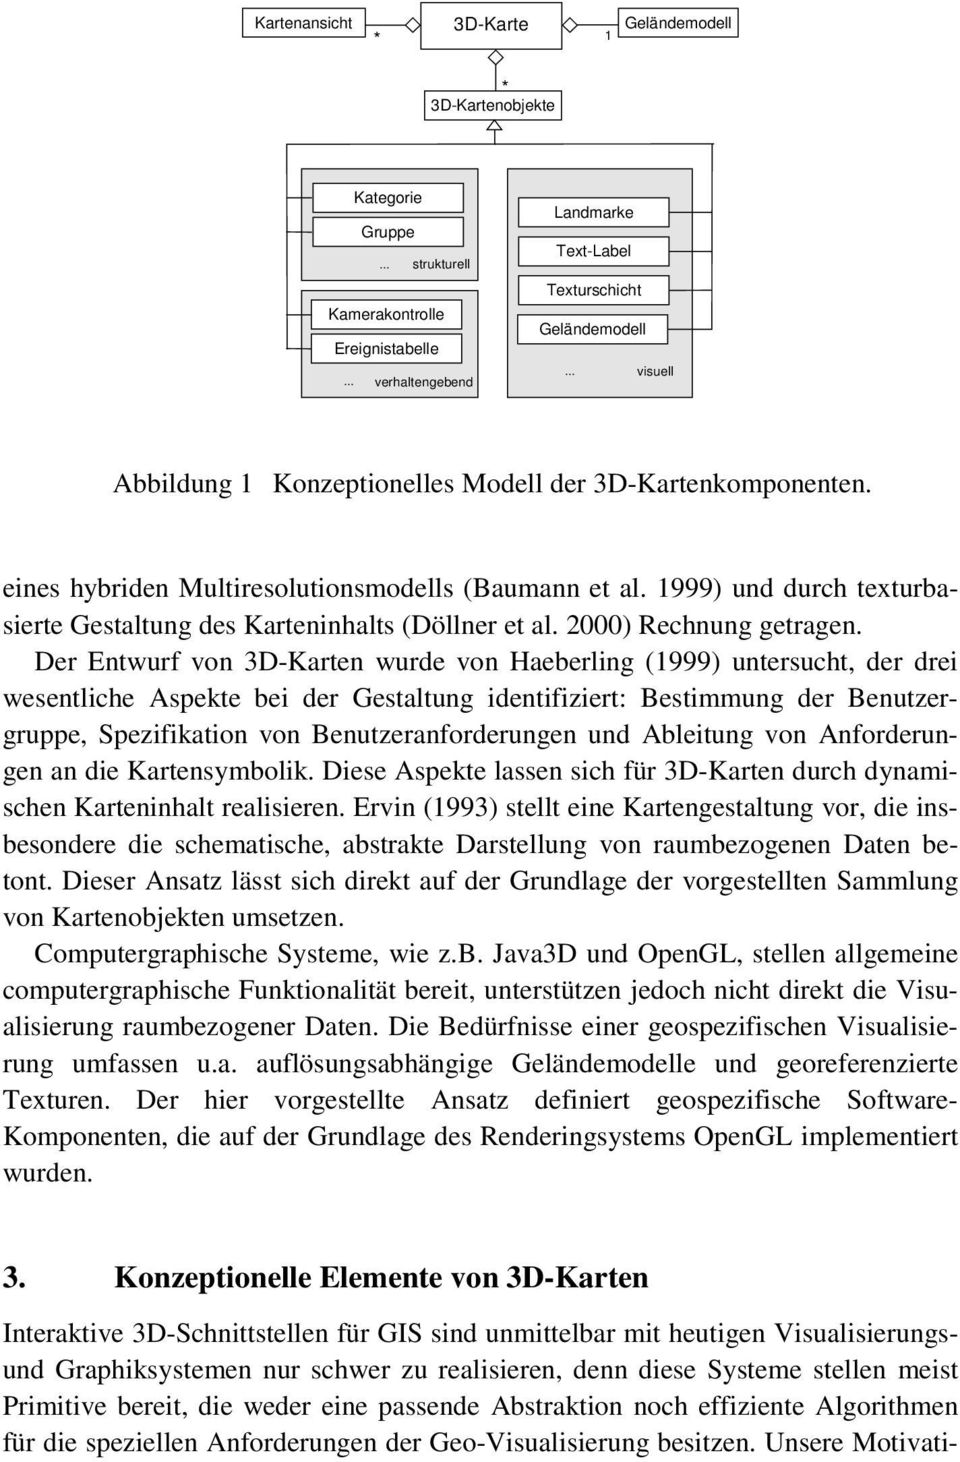 1999) und durch texturbasierte Gestaltung des Karteninhalts (Döllner et al. 2000) Rechnung getragen.